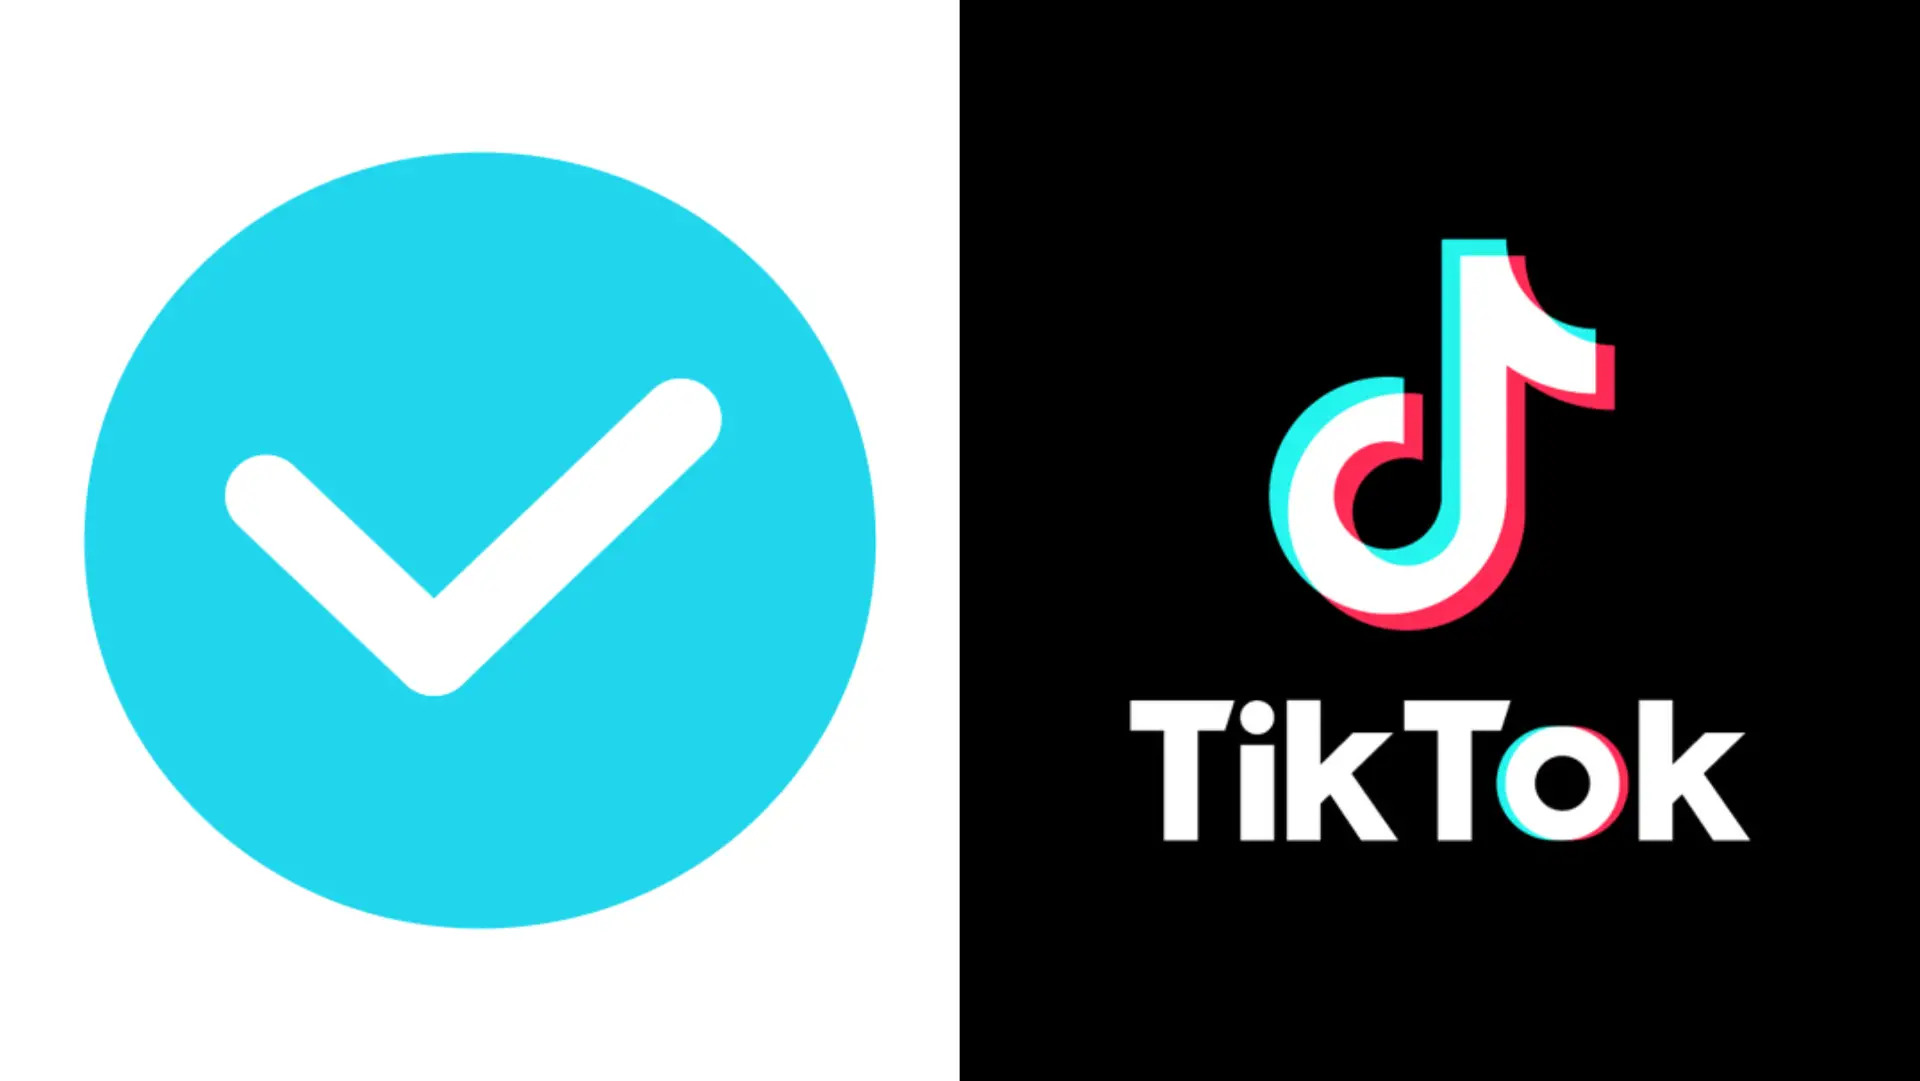 How To Get Verified On TikTok